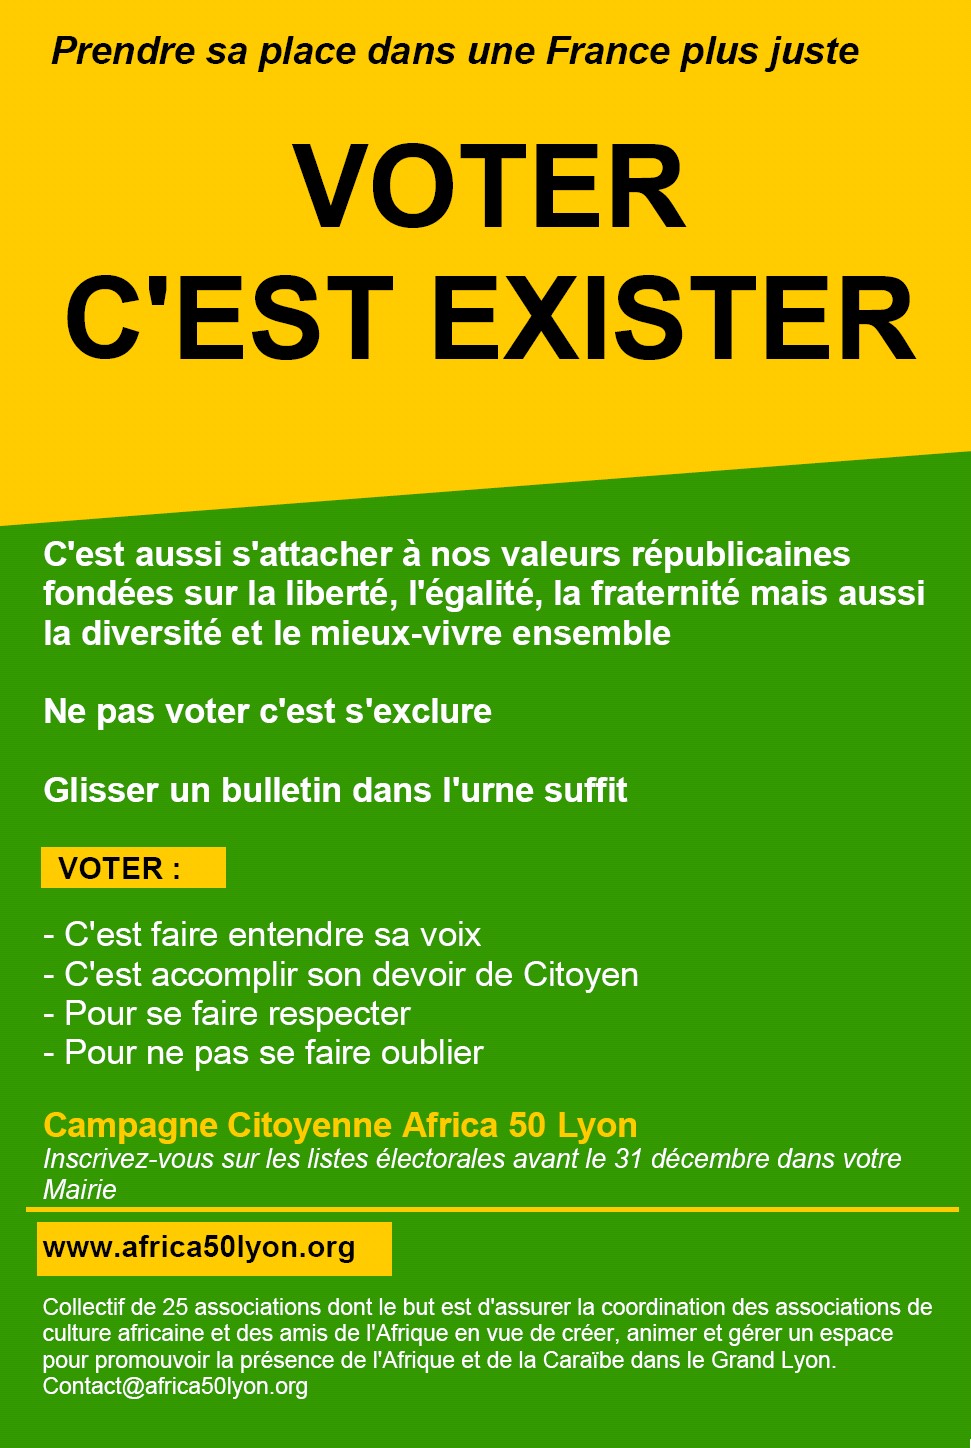 [POLITIQUE] Campagne Citoyenne Africa 50 « Voter c’est exister » encore quelques jours pour s’inscrire